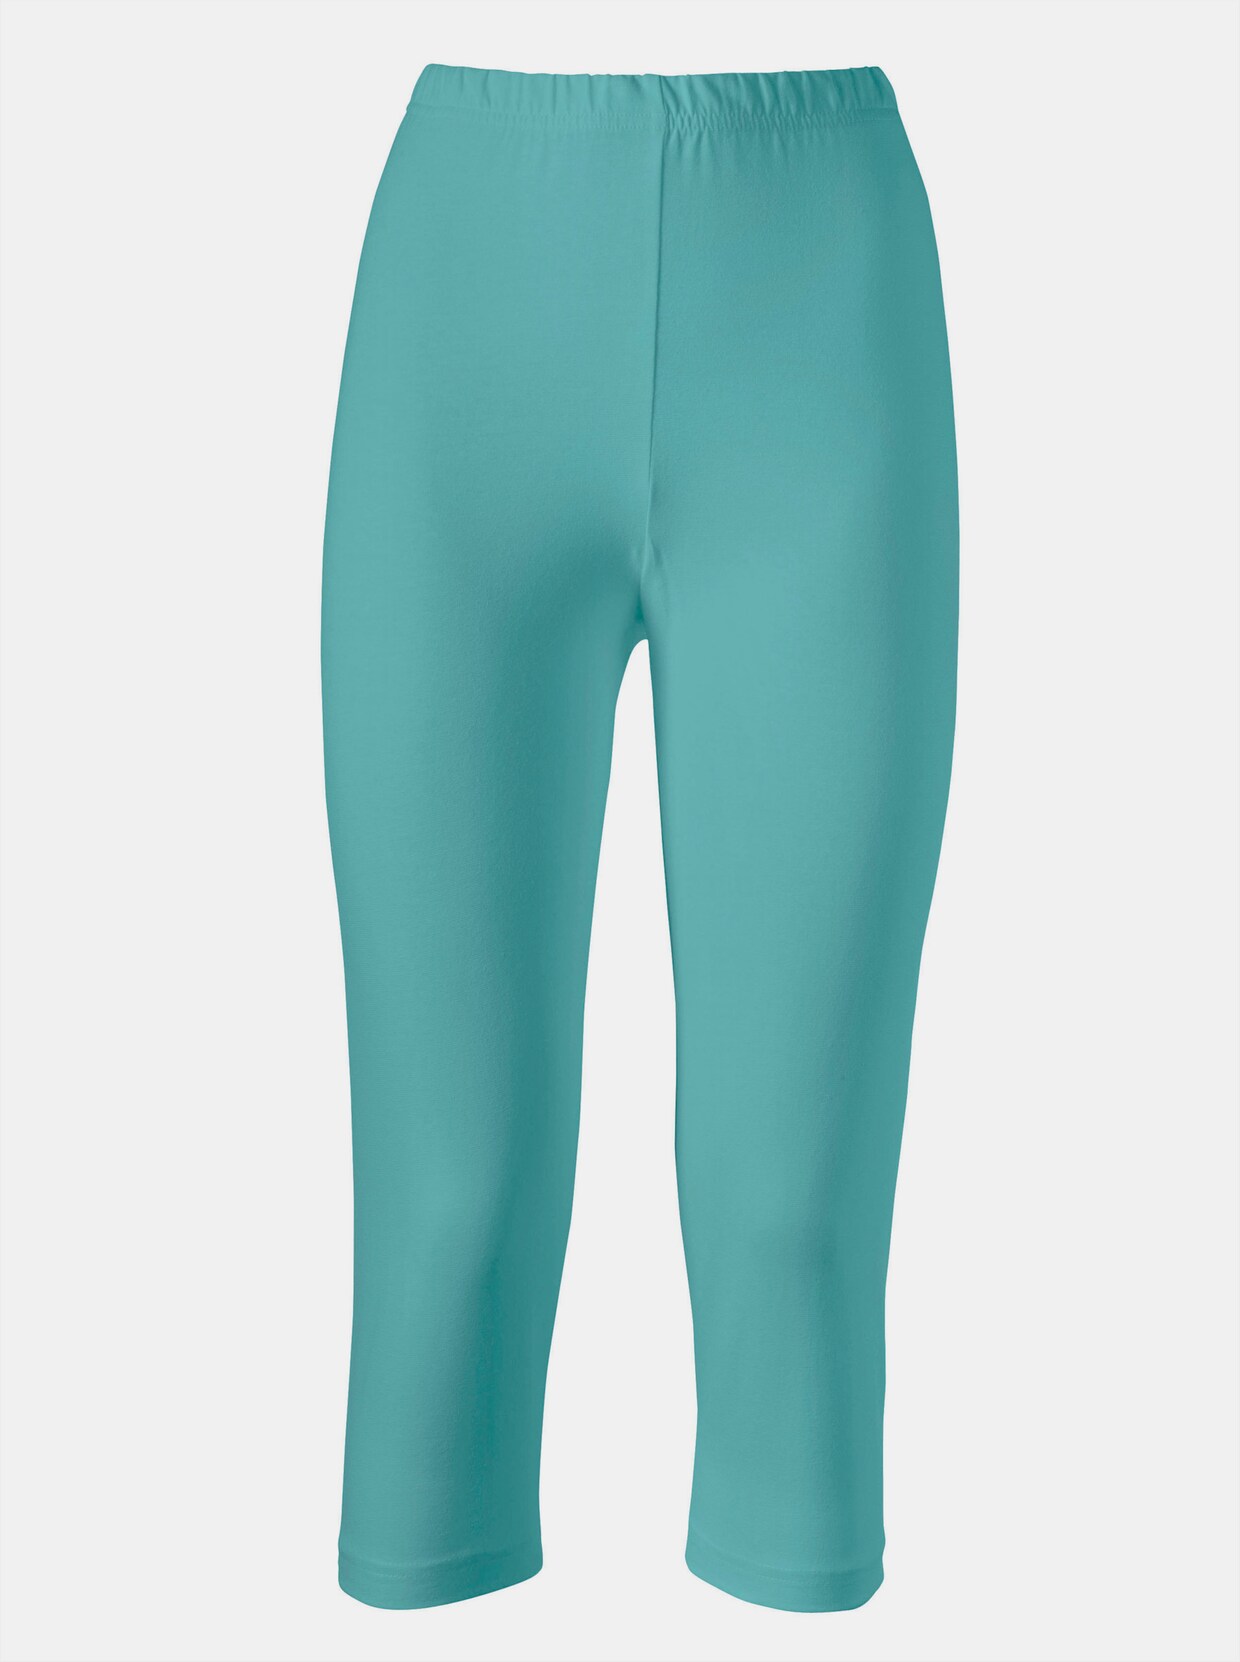 Capri-legging - turquoise